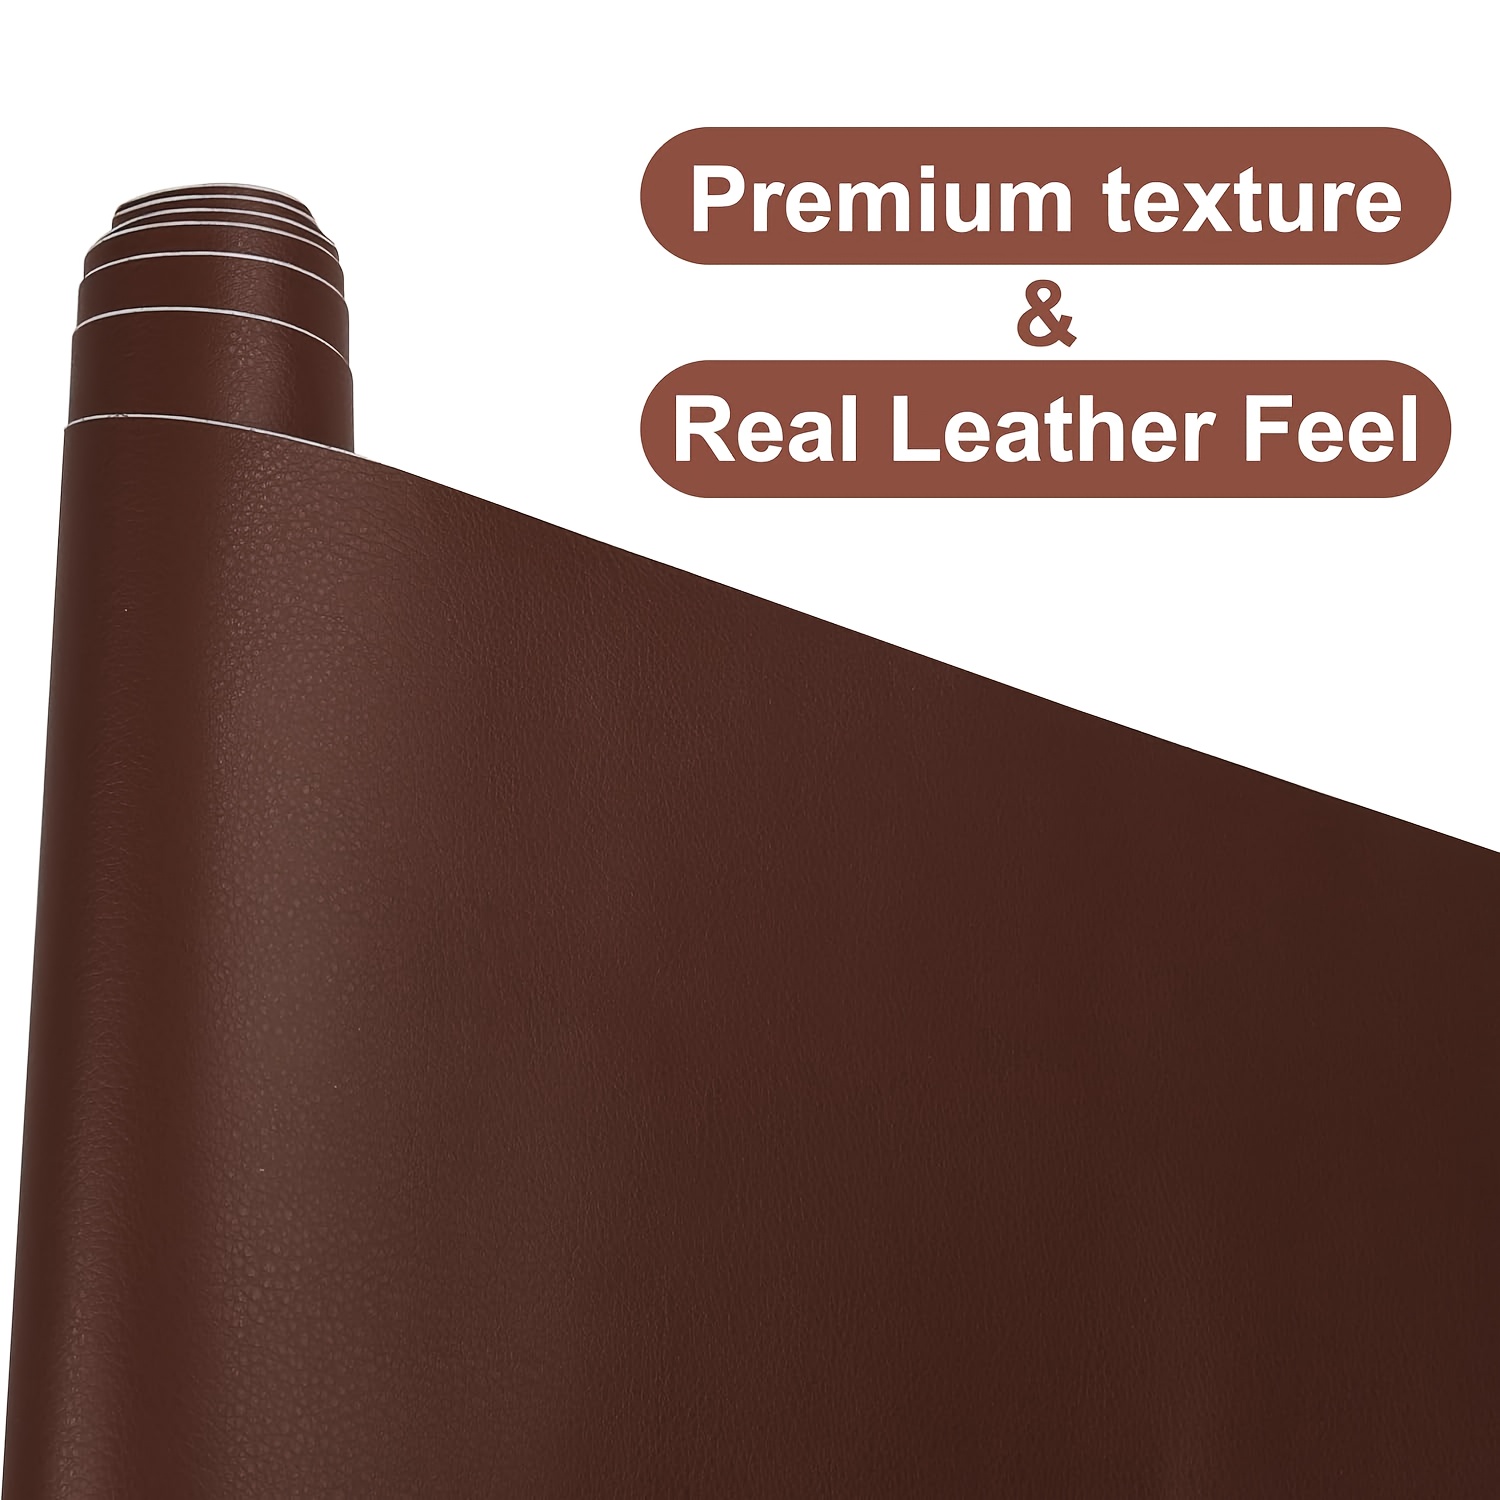 Leather Repair Patch Leather Repair Kit Self - Temu